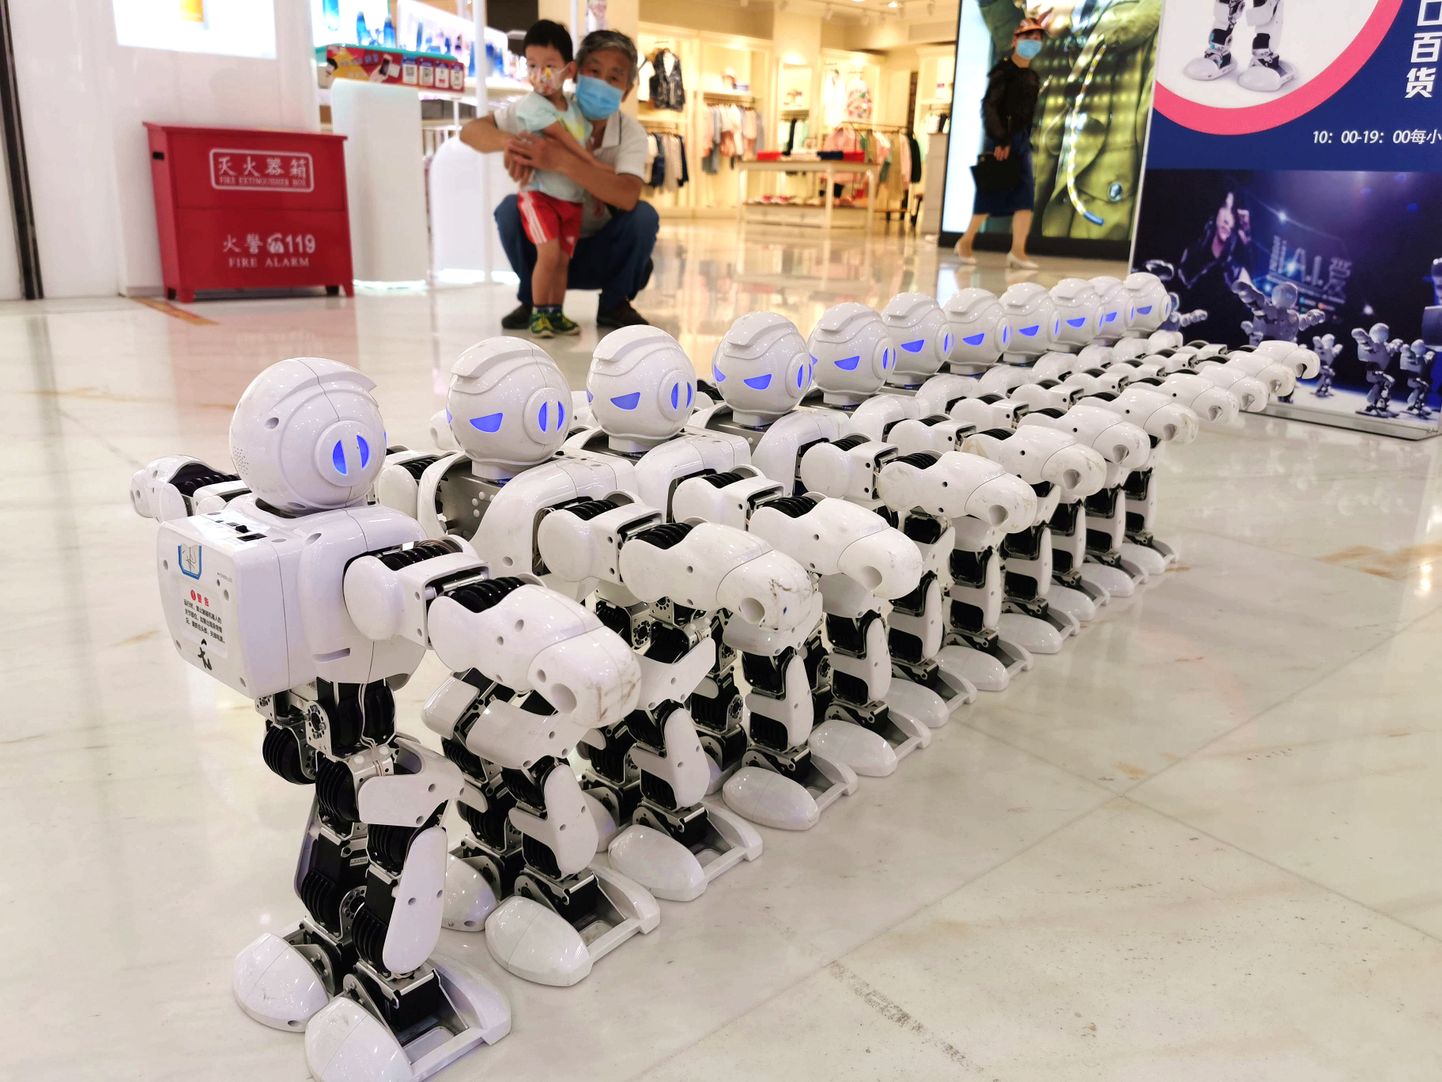 Hiina robotid Beijingi kaubamajas. Foto on illustratiivne ja ei ole SEB pangaga seotud.